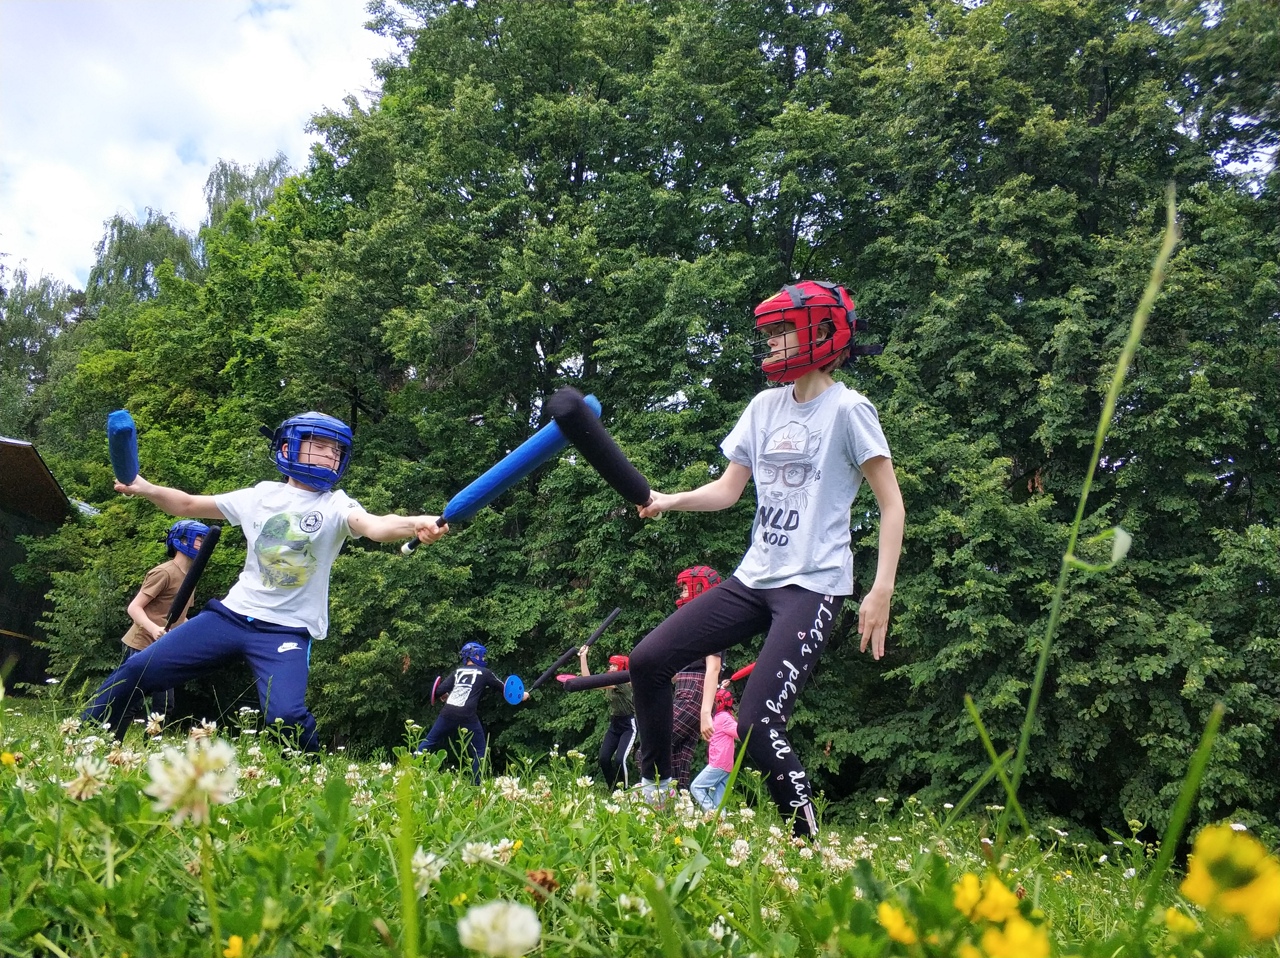 «Новая Стихия» – Детский спортивный лагерь для детей 7-16 лет в Подмосковье, летние смены от 29887 руб., фото программы 8